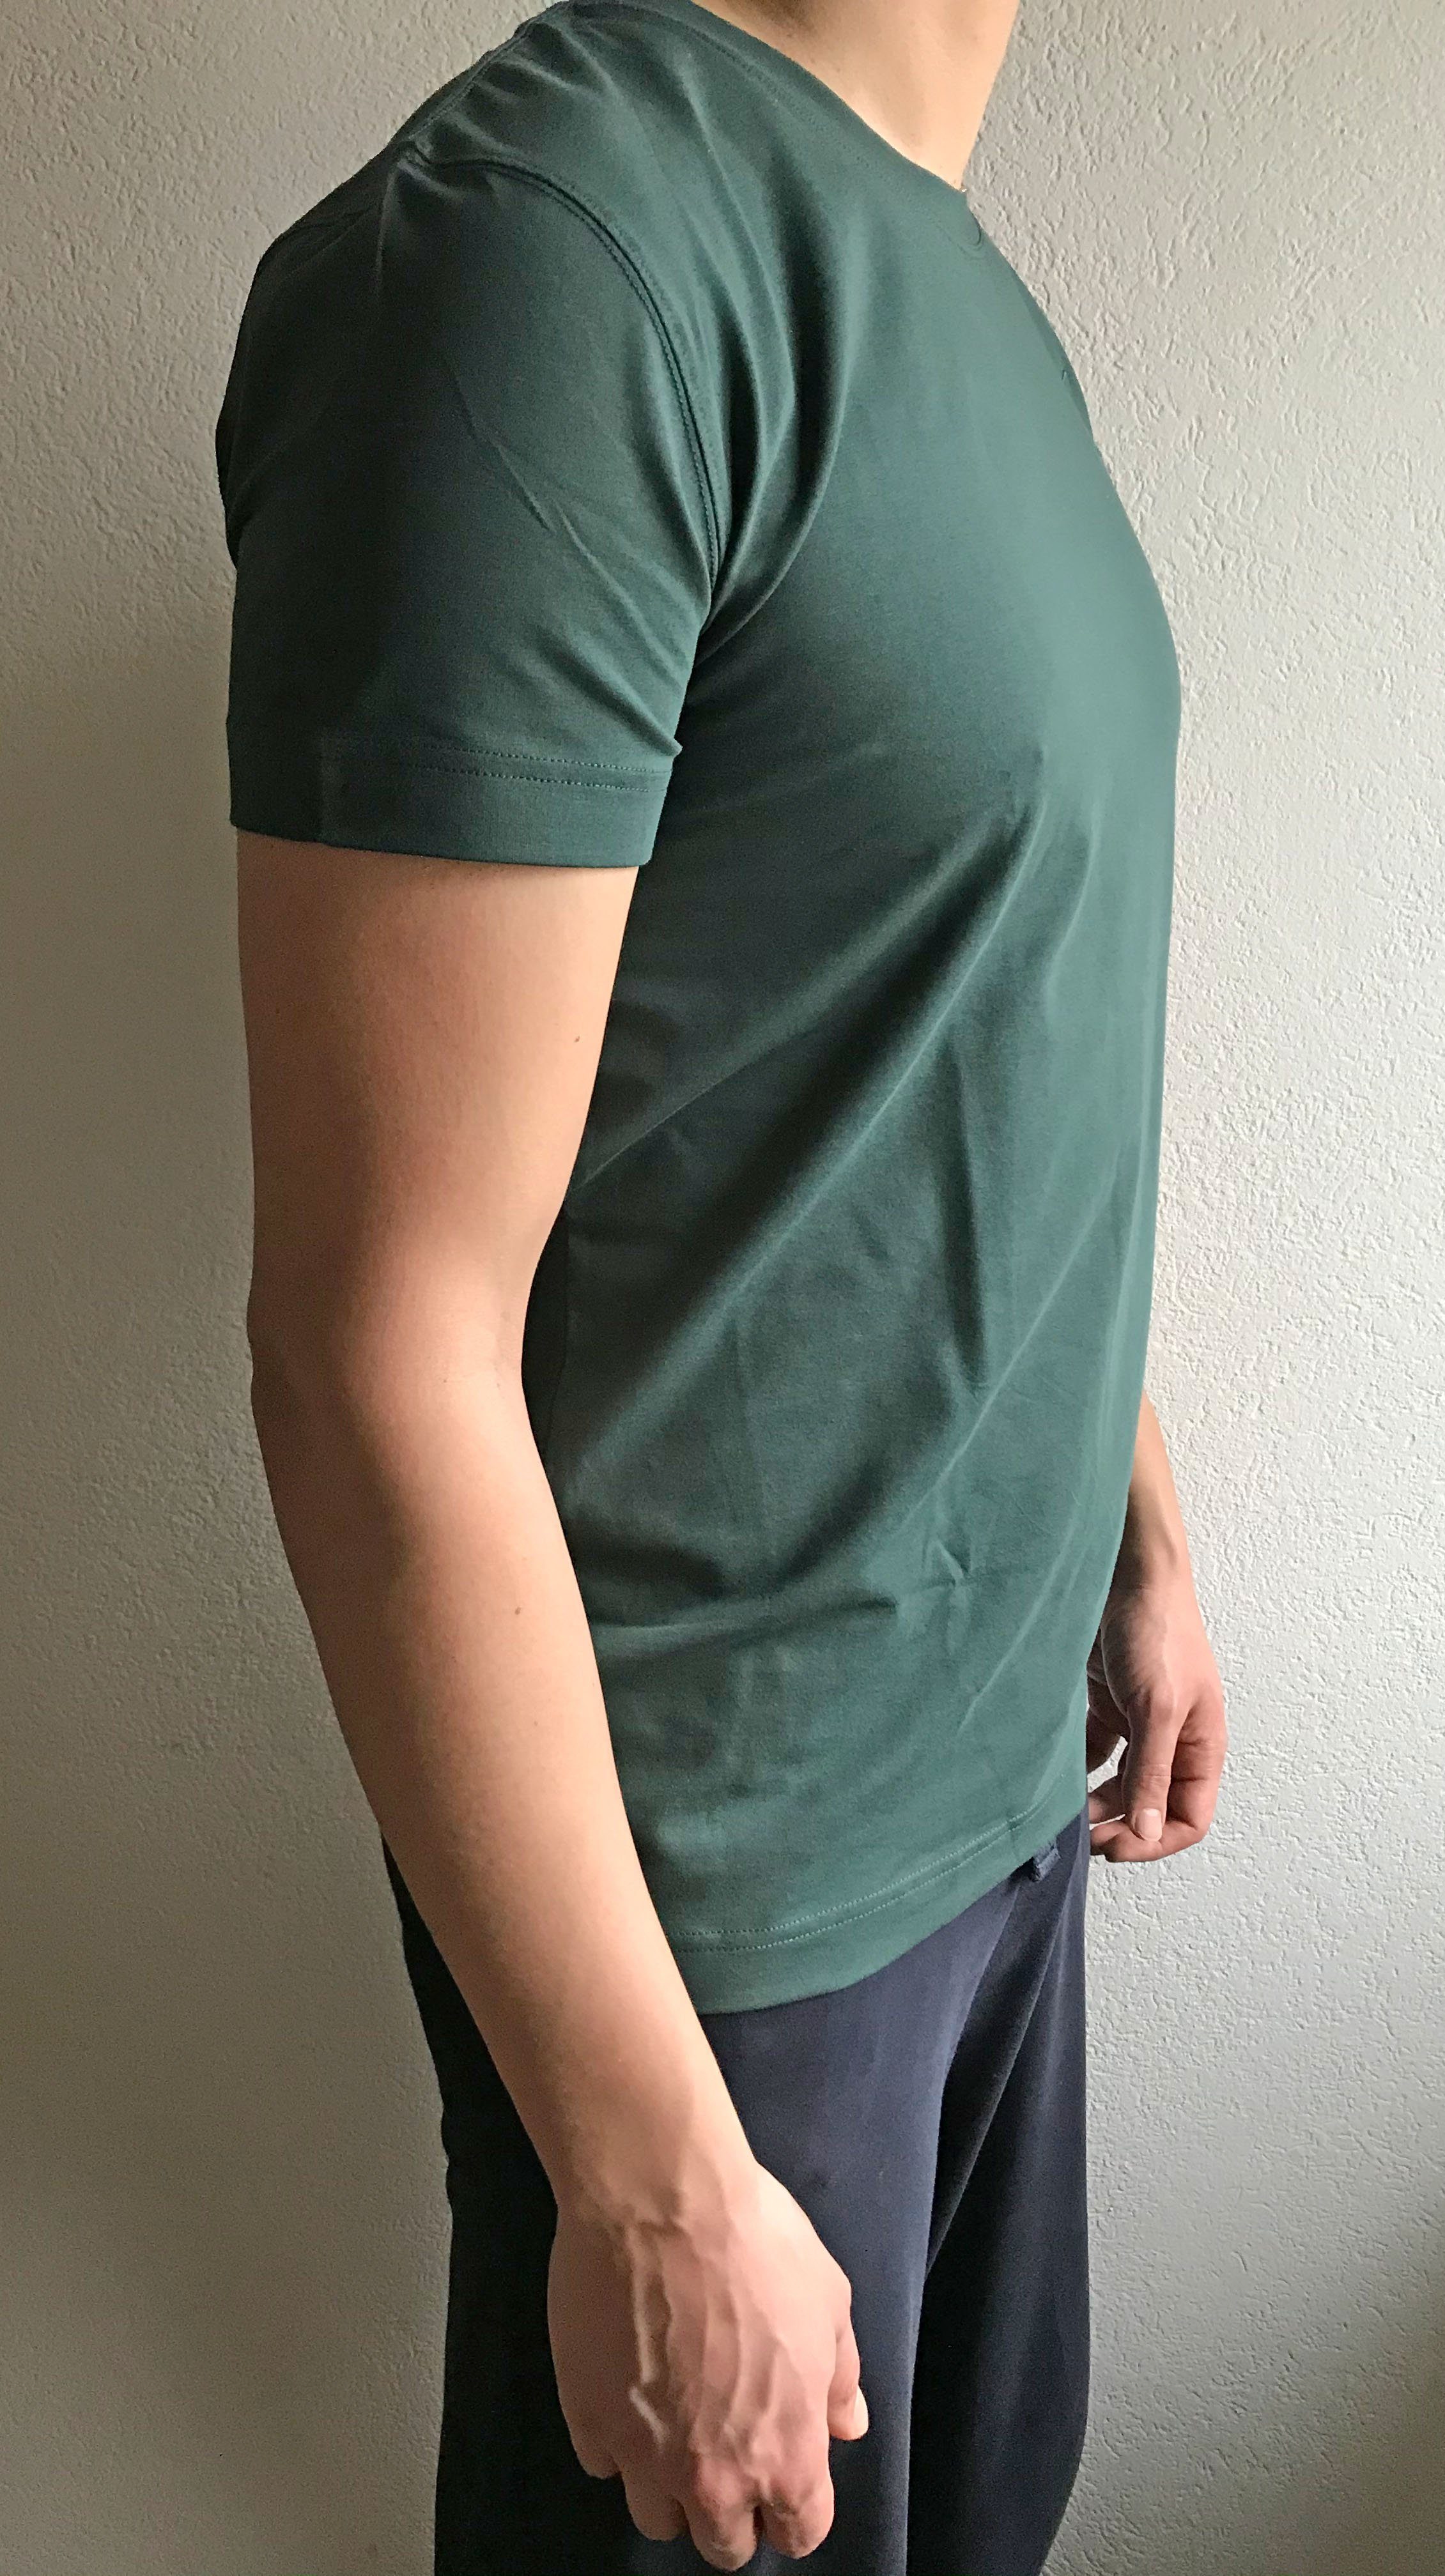 kühlend, geeignet Sommer T-Shirt auch gut Thymian im Herren ESPARTO Bhaalu Yogashirt unisex, leicht für